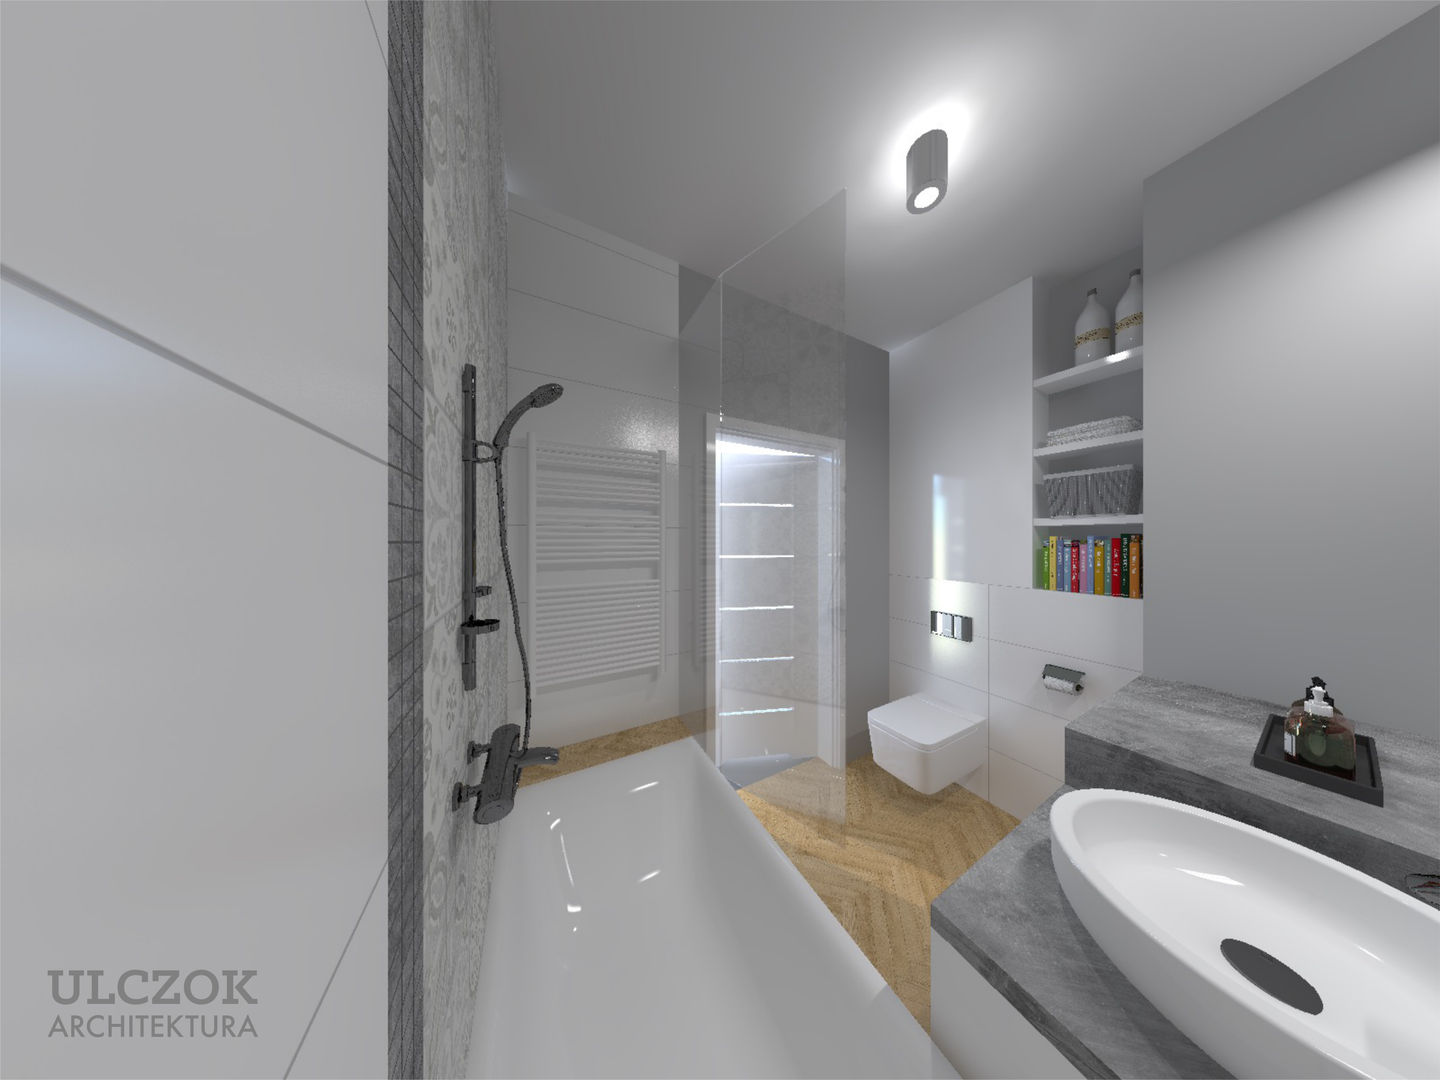 Projekt małej łazienki, Ulczok Architektura Ulczok Architektura حمام